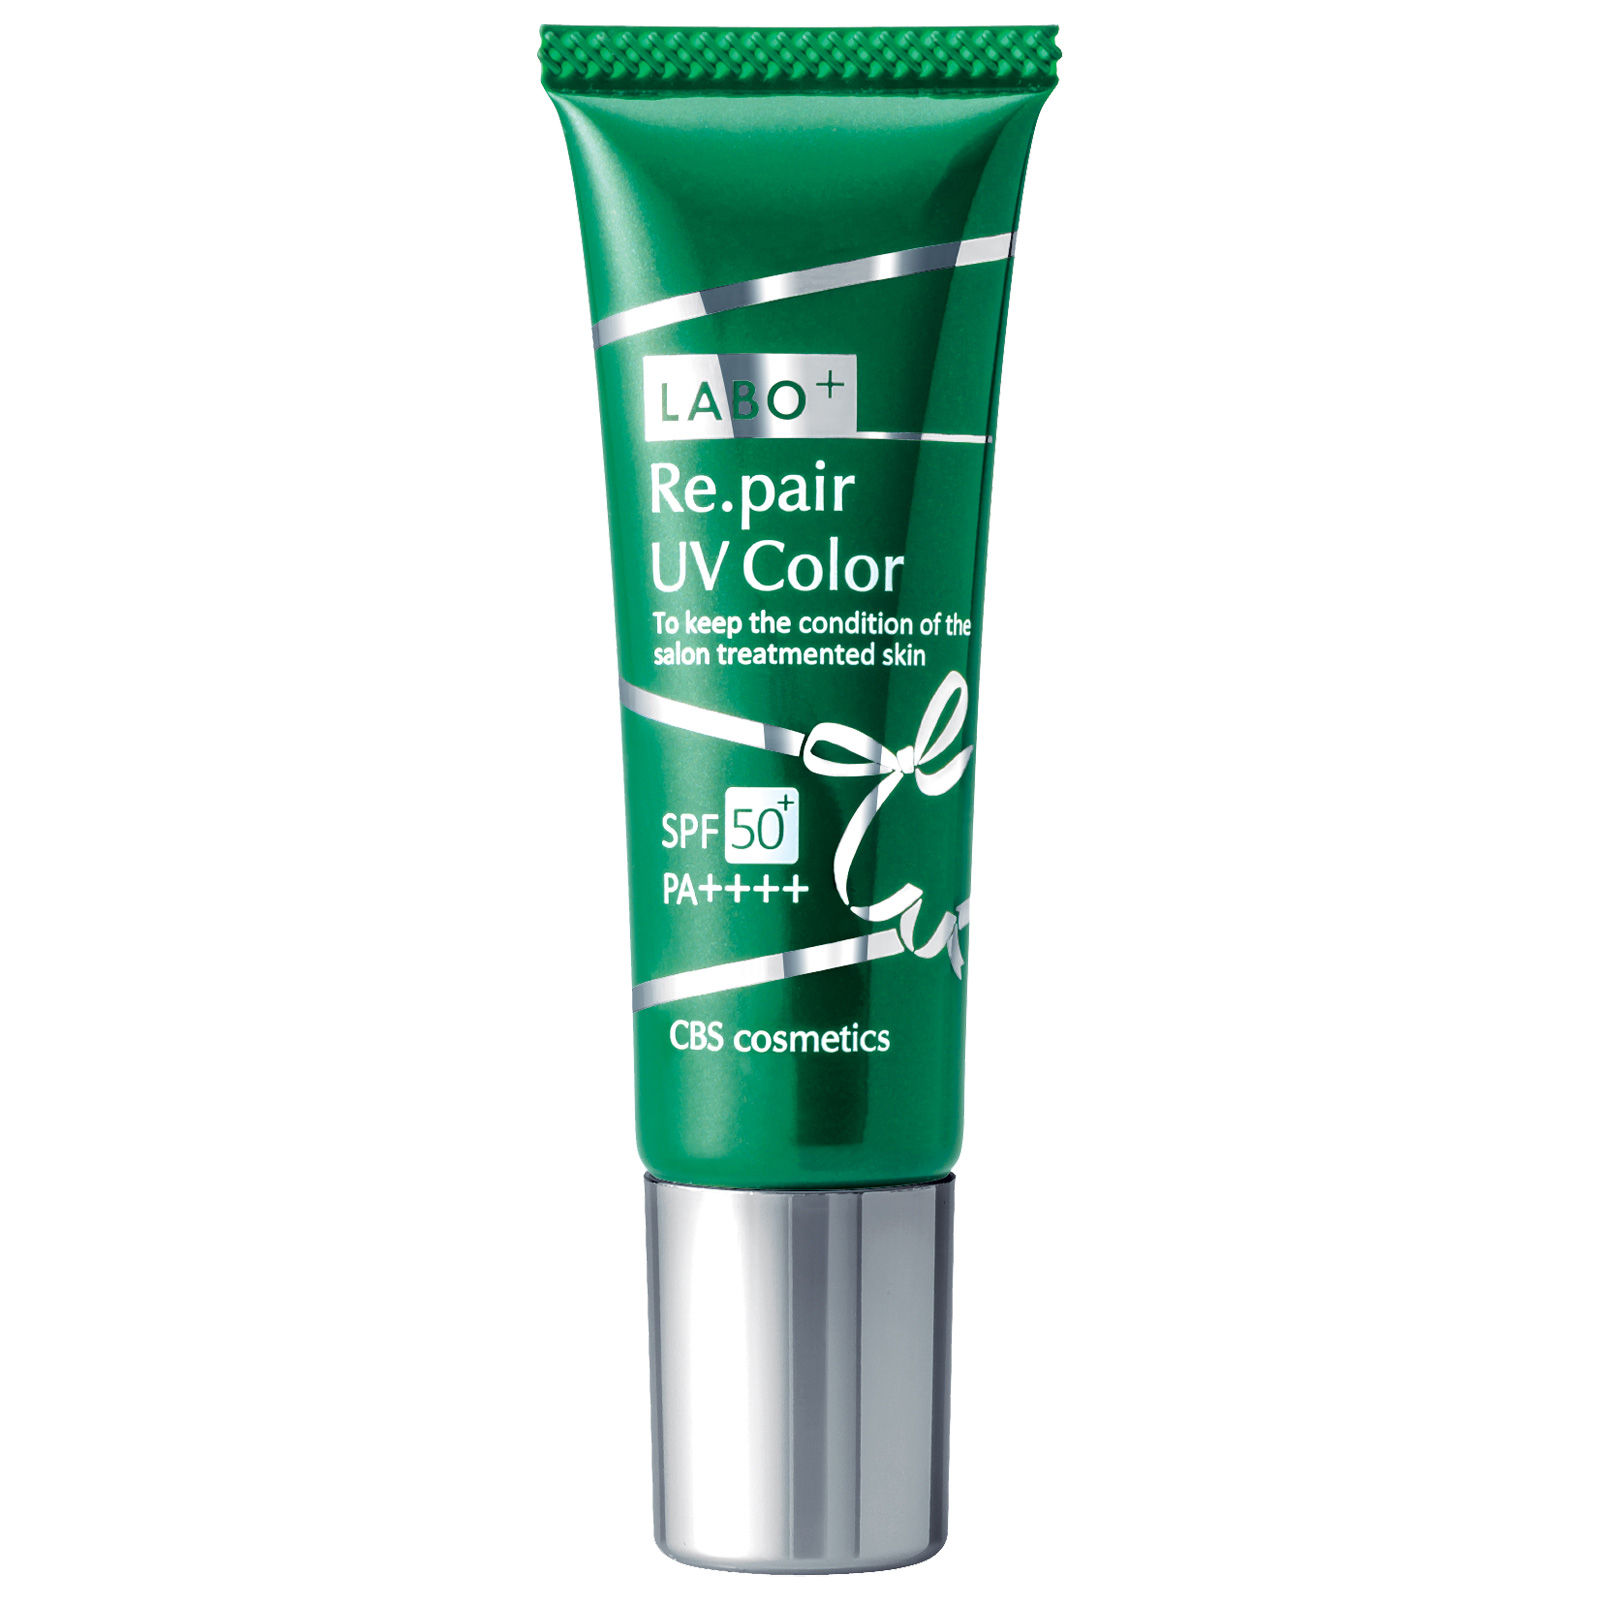 CBS Cosmetics LABO+ Re.pair UV Color Natural SPF 50 PA++++. Восстанавливающий солнцезащитный крем для лица Лабо+, натуральный, 30 г